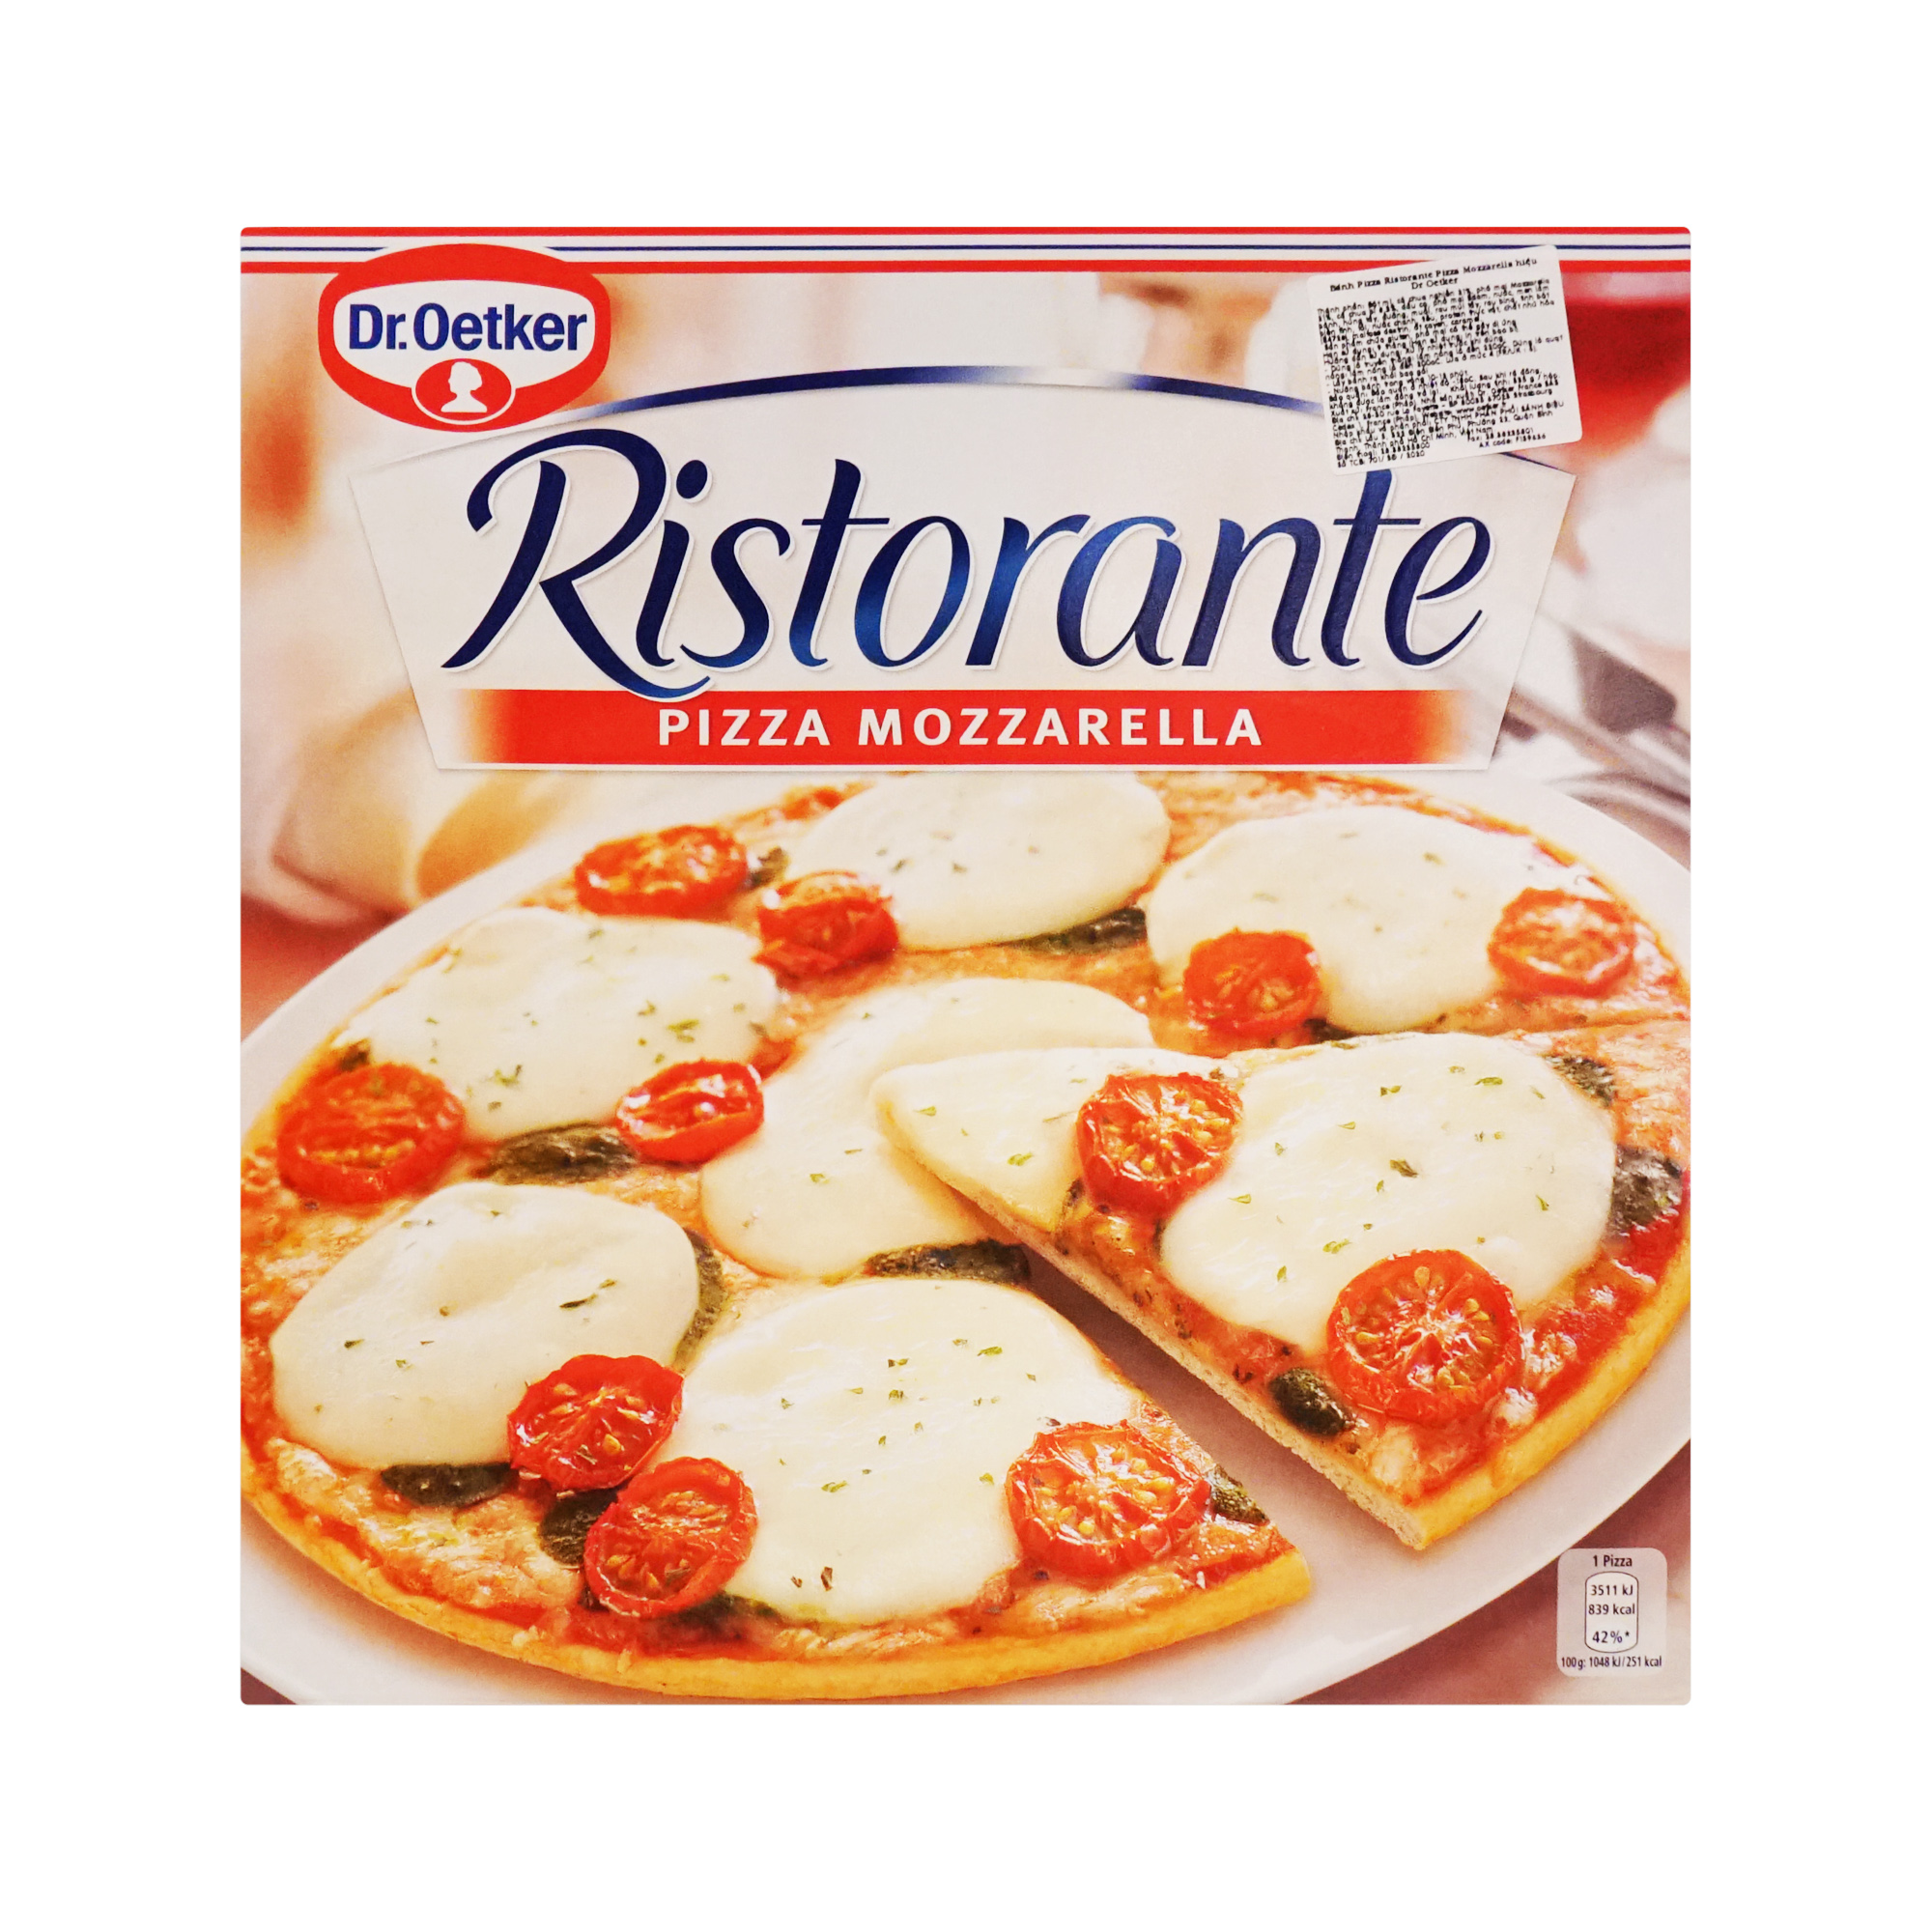 Dr. Oetker Ristorante Pizza Mozzarella (335g)